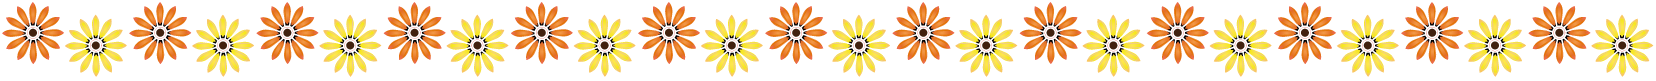 春の花の飾り罫02-ジャノメ菊イラスト